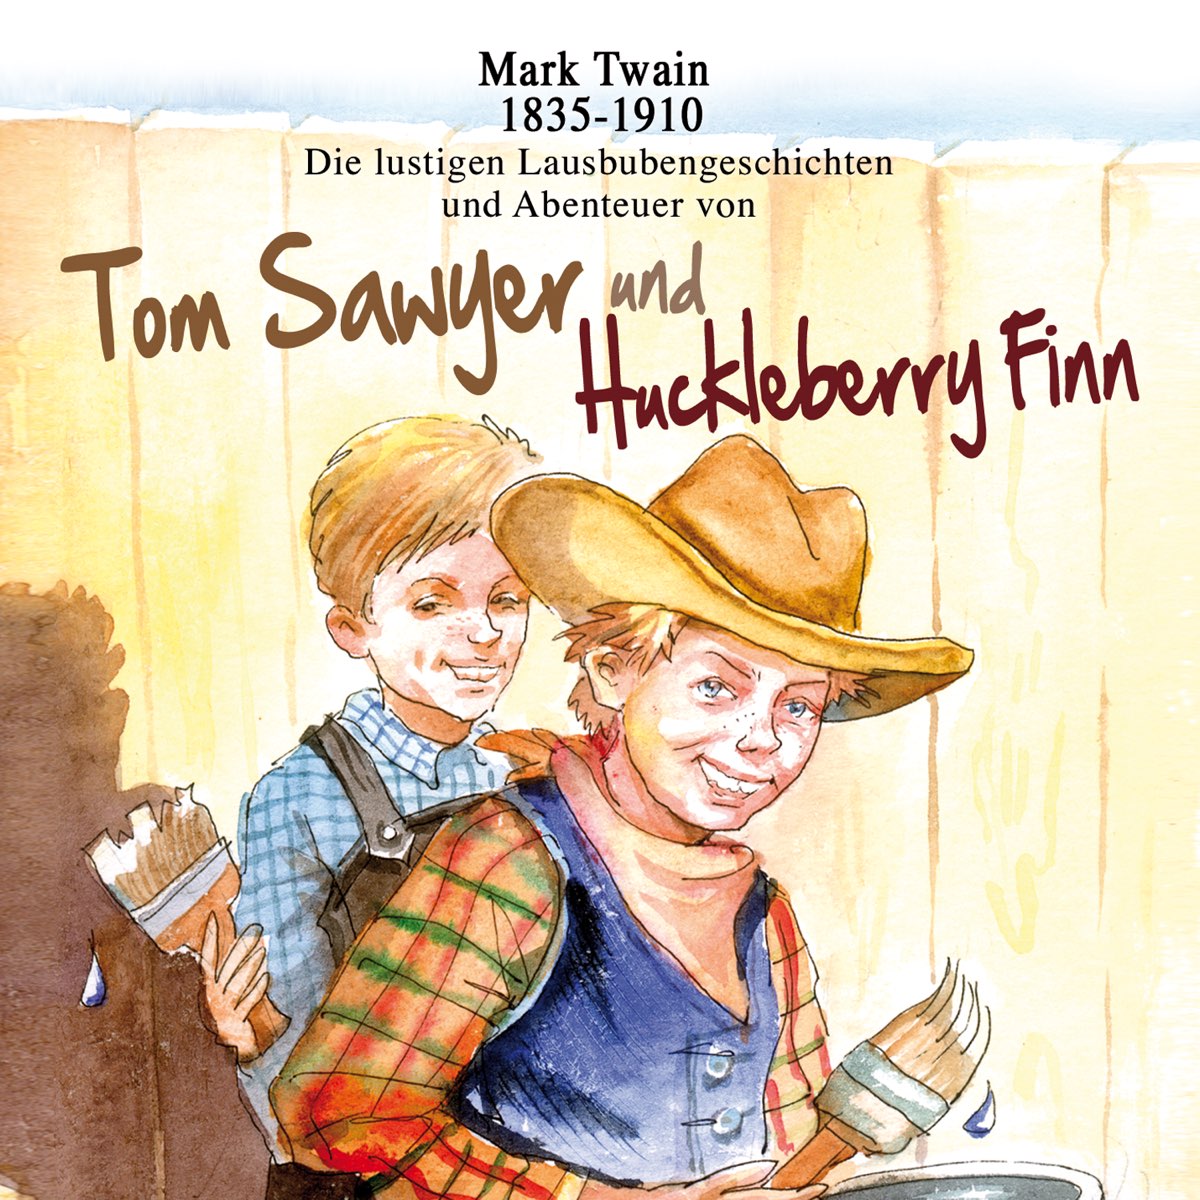 Приключения финна слушать аудиокнигу. Mark Twain Tom Sawyer. Том Сойер и Гекльберри. Tom Sawyer & Huckleberry Finn. Mark Twain Tom Sawyer and Huckleberry Finn.